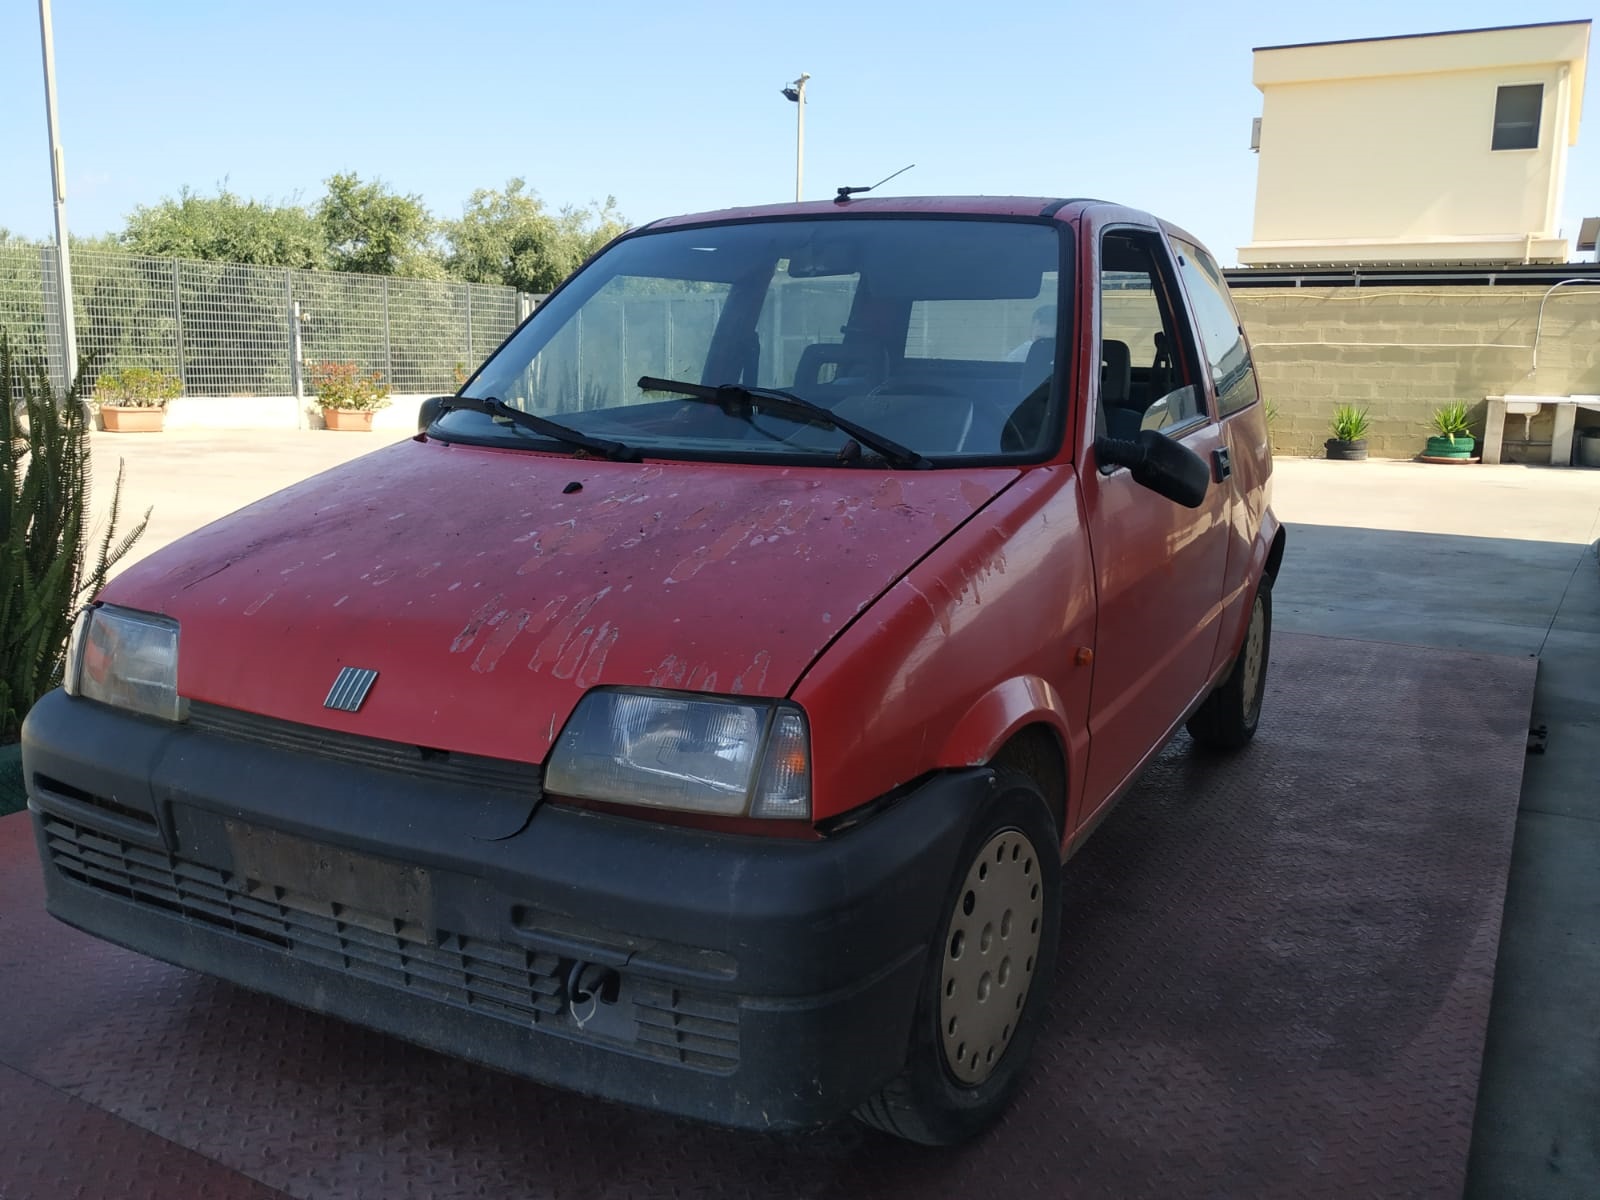 Scopri di più sull'articolo Fiat 500 del 1995 disponibile nel nostro autoparco di demolizione per la vendita dei ricambi usati. Info solo telefonando al 348 5846422. Universal Car di Nicola Ladisa.